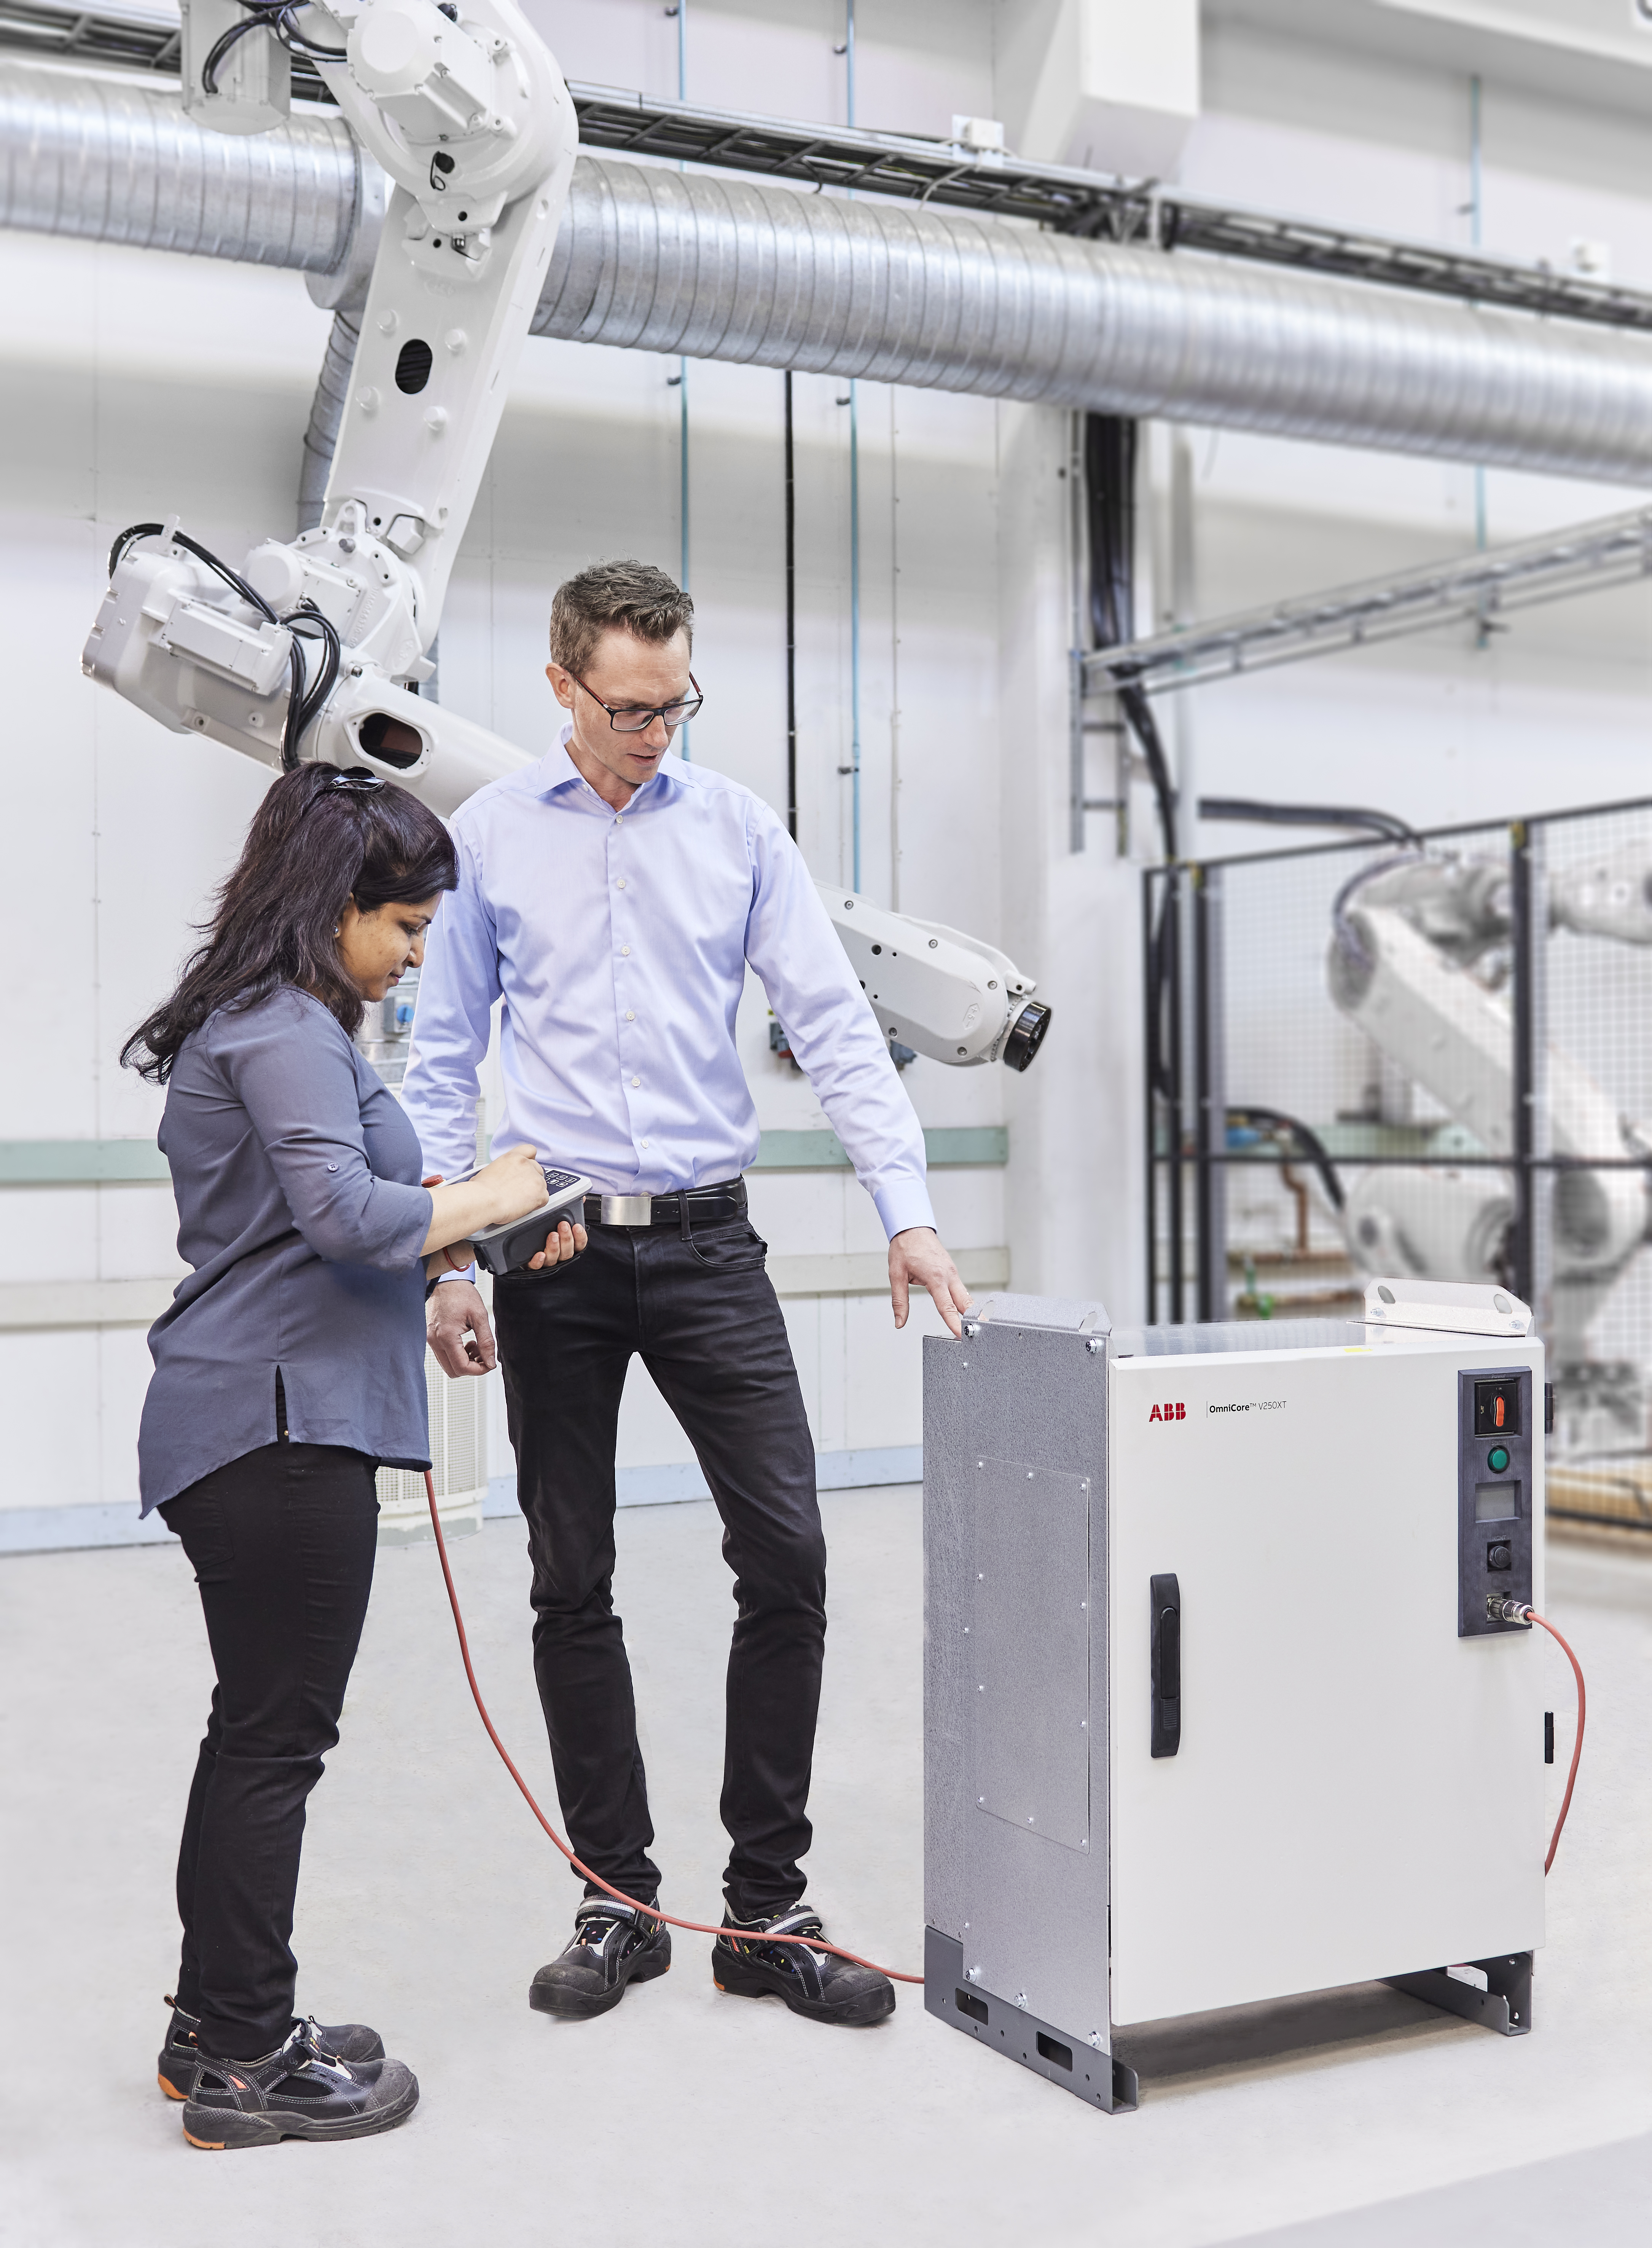 Los nuevos controladores de robot OmniCore™ de ABB ofrecen una fabricación más rápida, escalable y energéticamente más eficiente